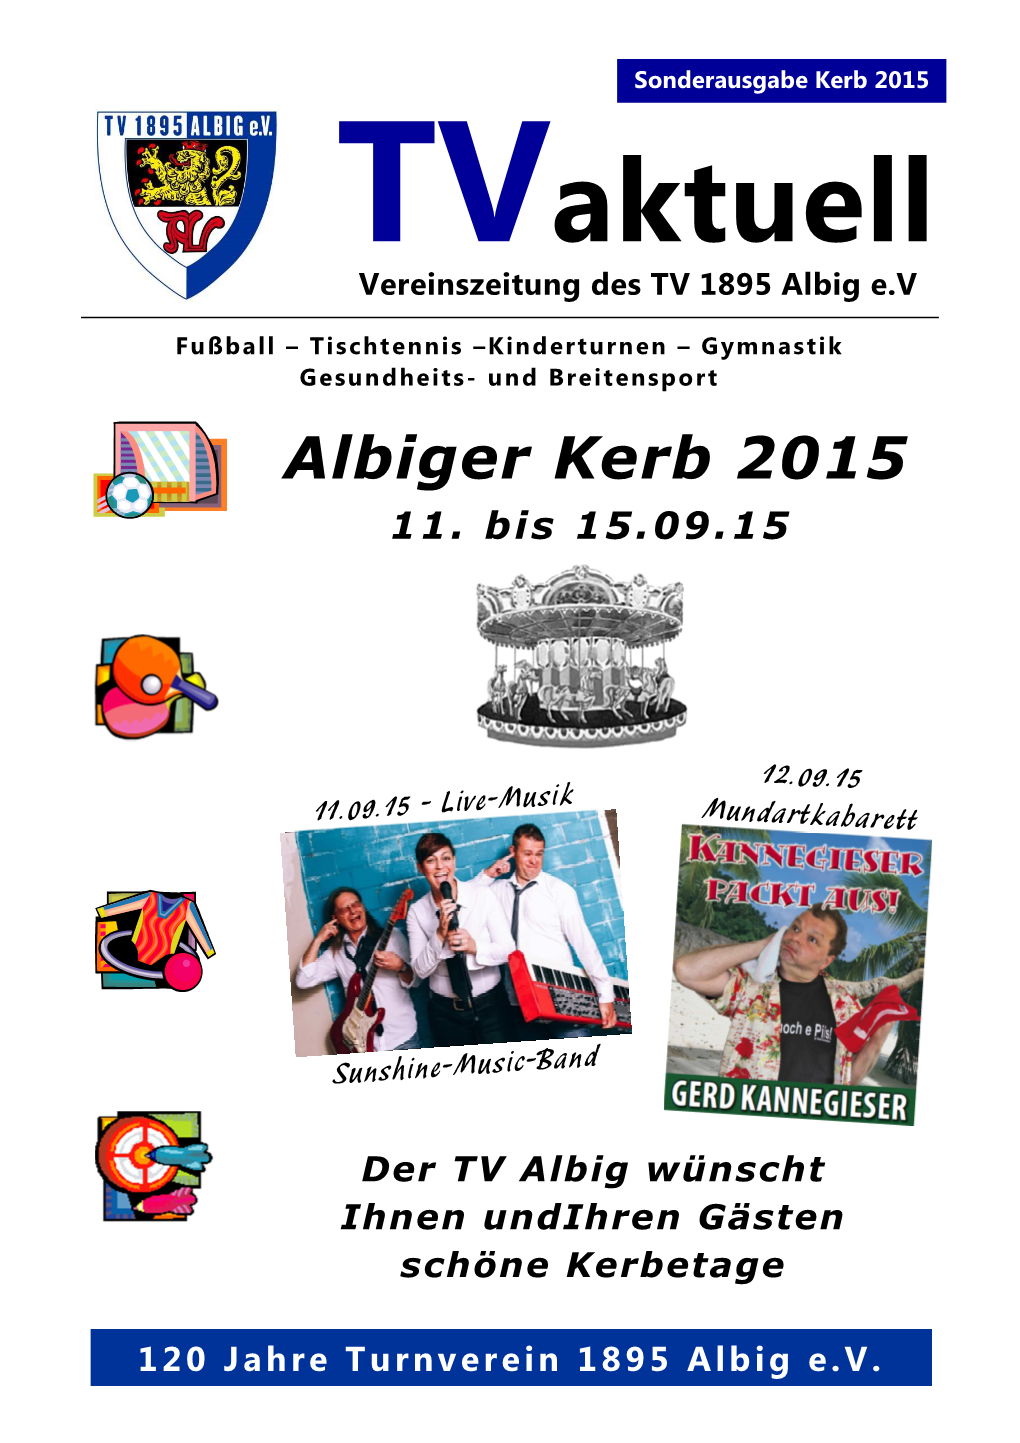 Albiger Kerb 2015 11